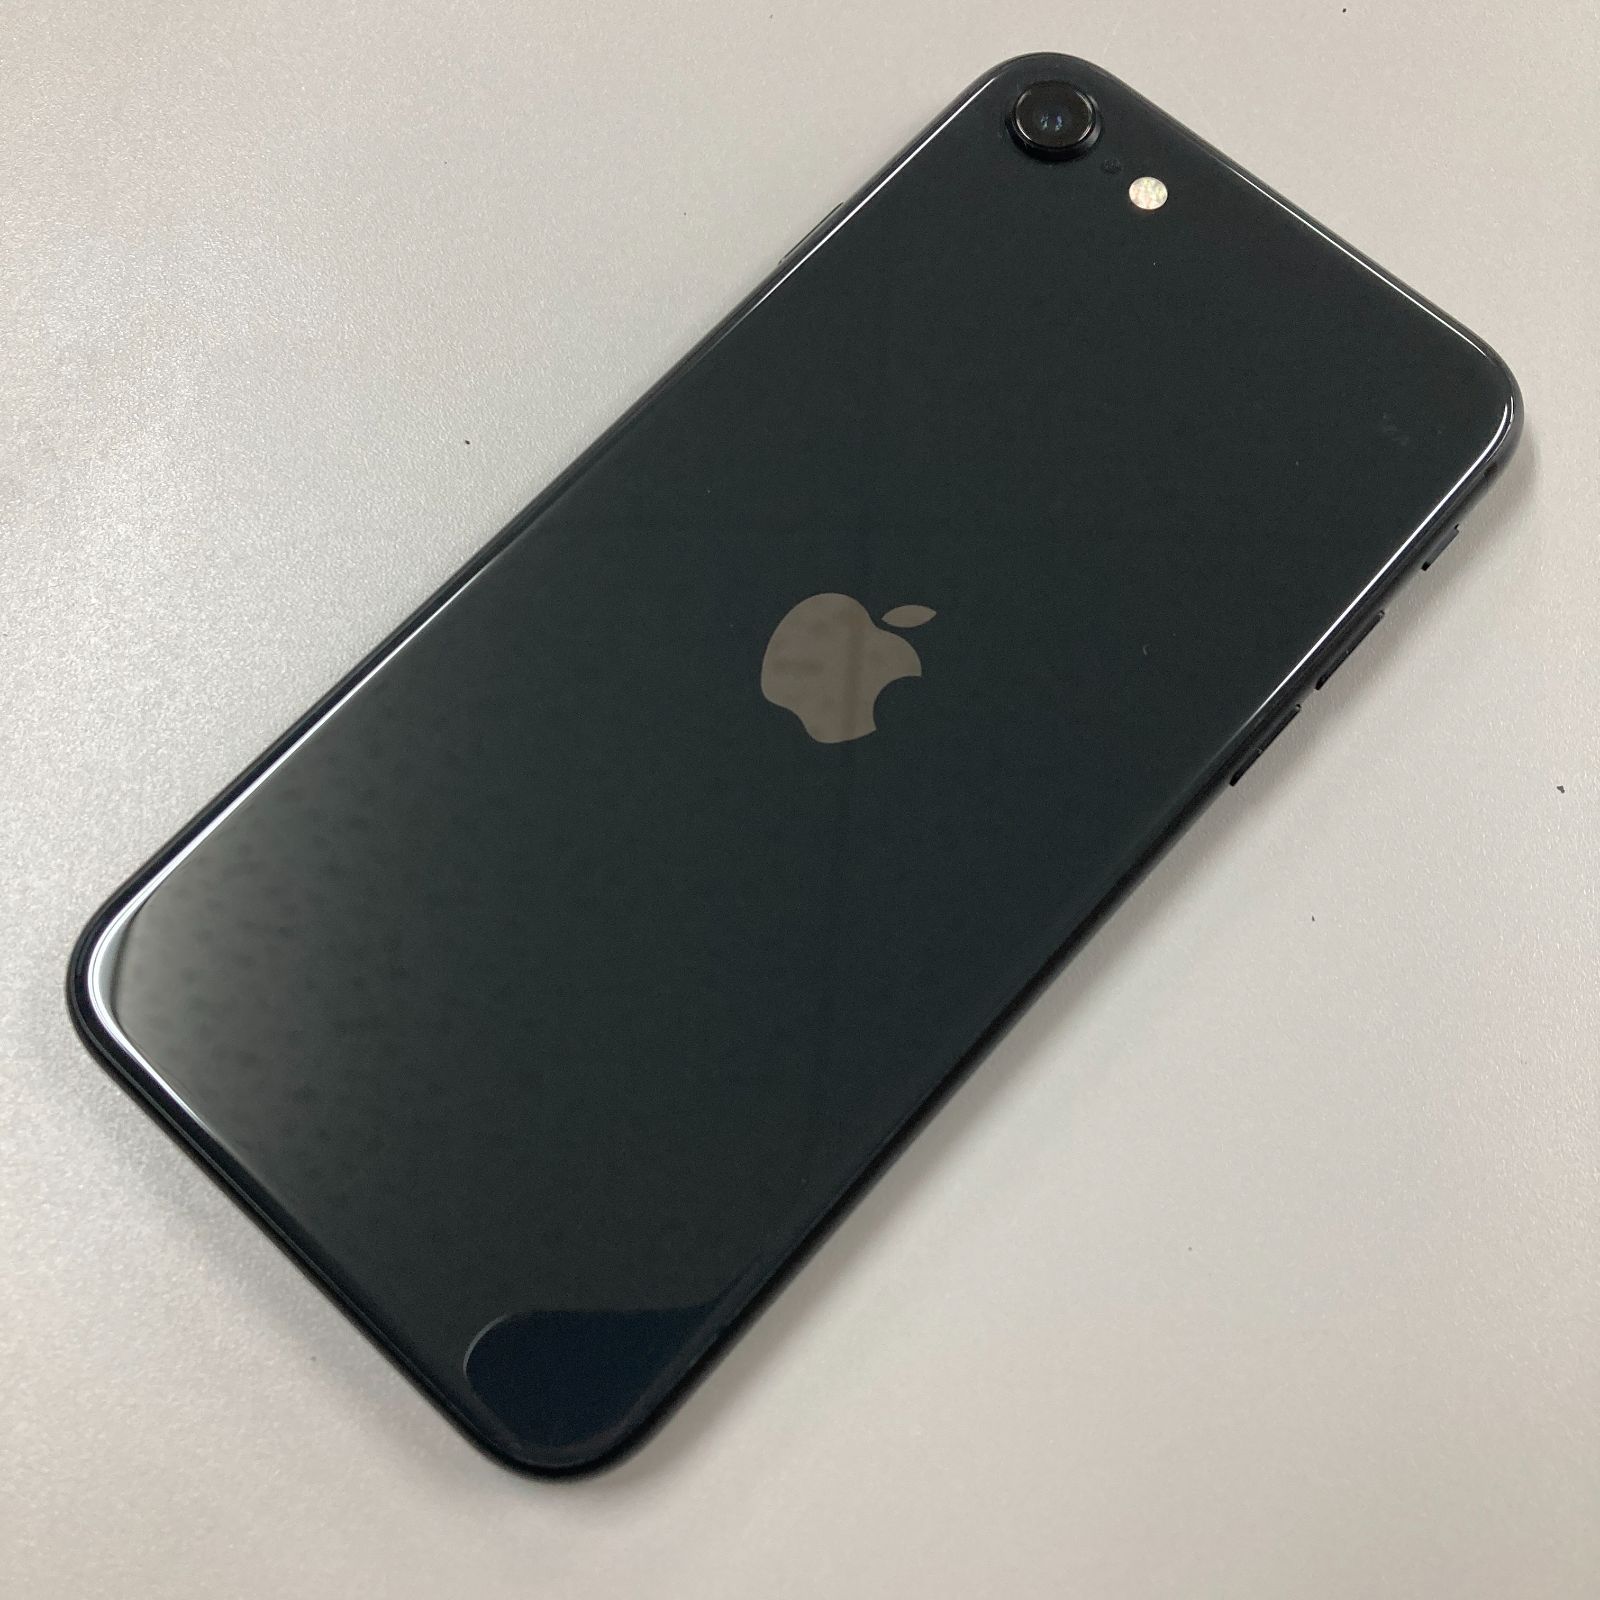 iPhone SE(第2世代) SE2 64GB ブラック SIMロック解除済み No.30 